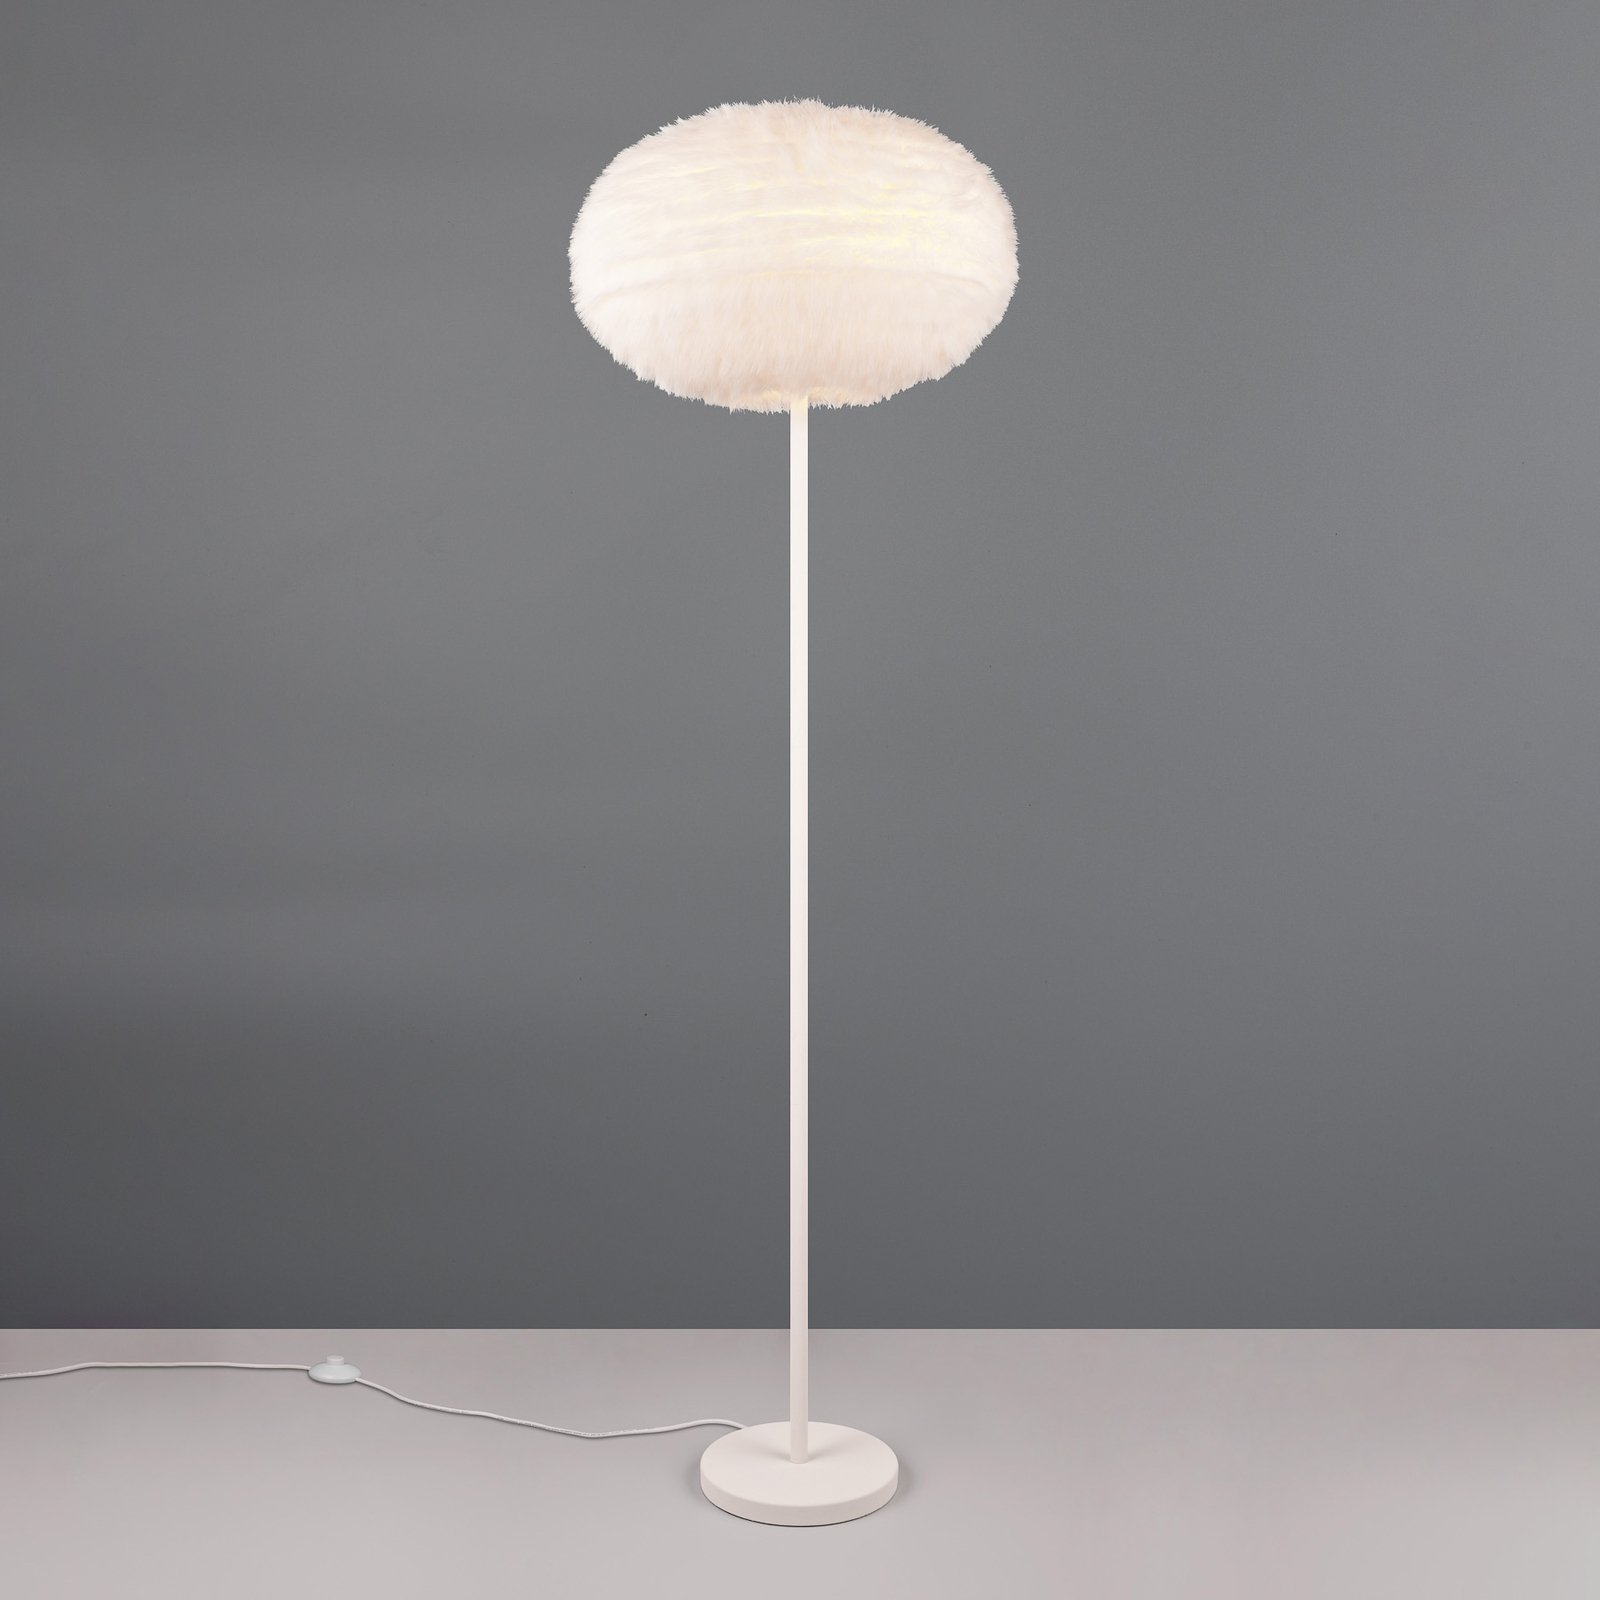 Chlupatá stojací lampa, výška 154 cm, písková barva, syntetický plyš